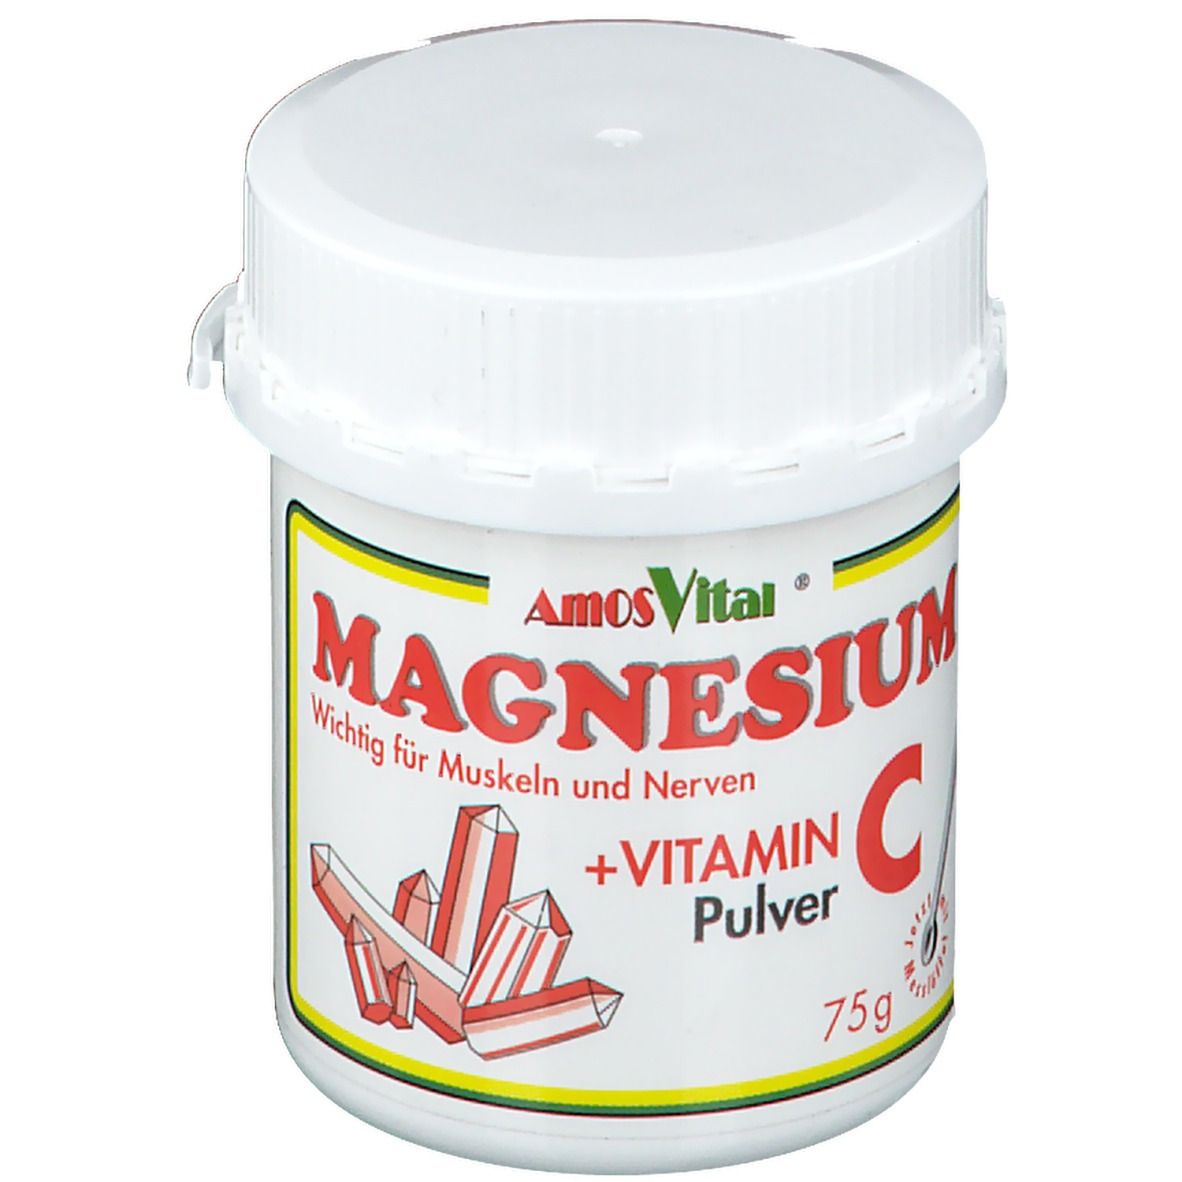 AmosVital® Magnesium + Vitamin C-Pulver